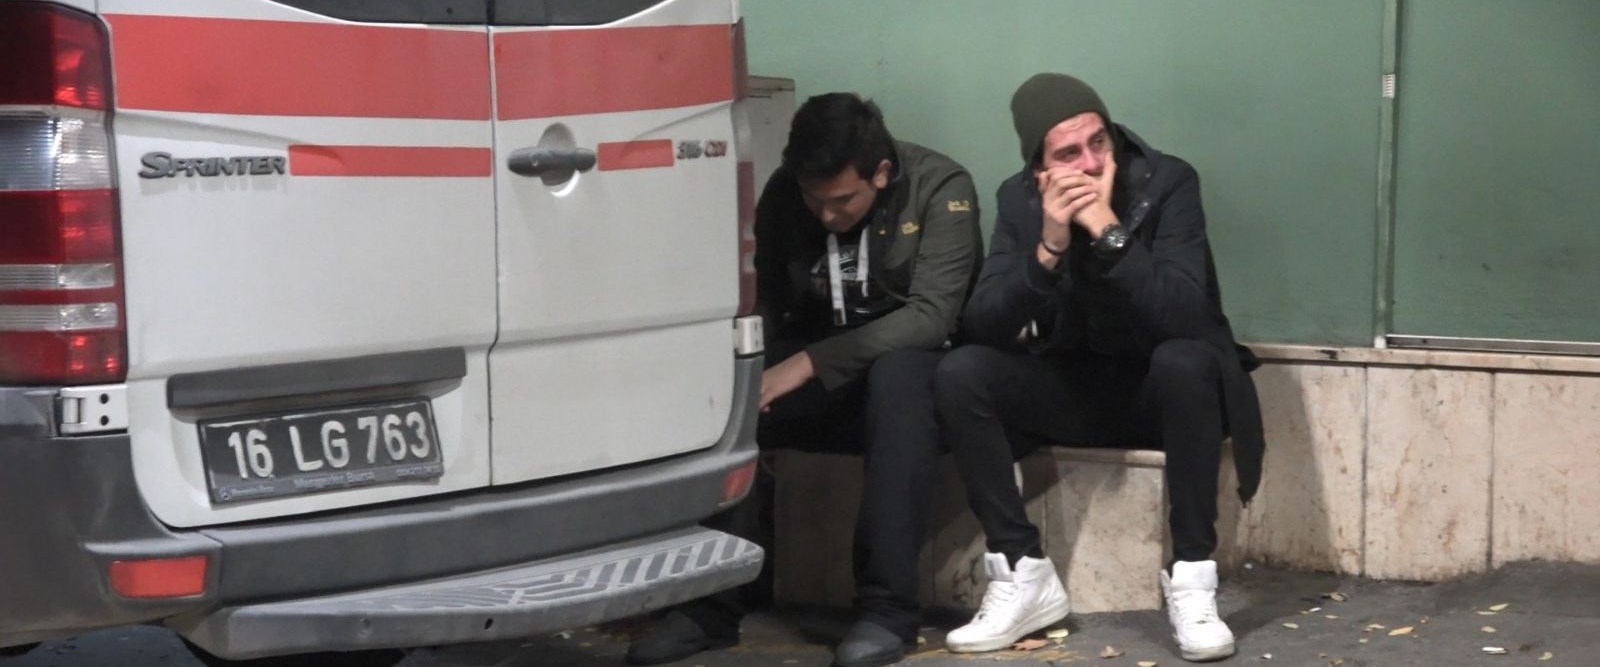 Bursa’da şofbenden sızan gazdan zehirlenen üniversite öğrencisi öldü